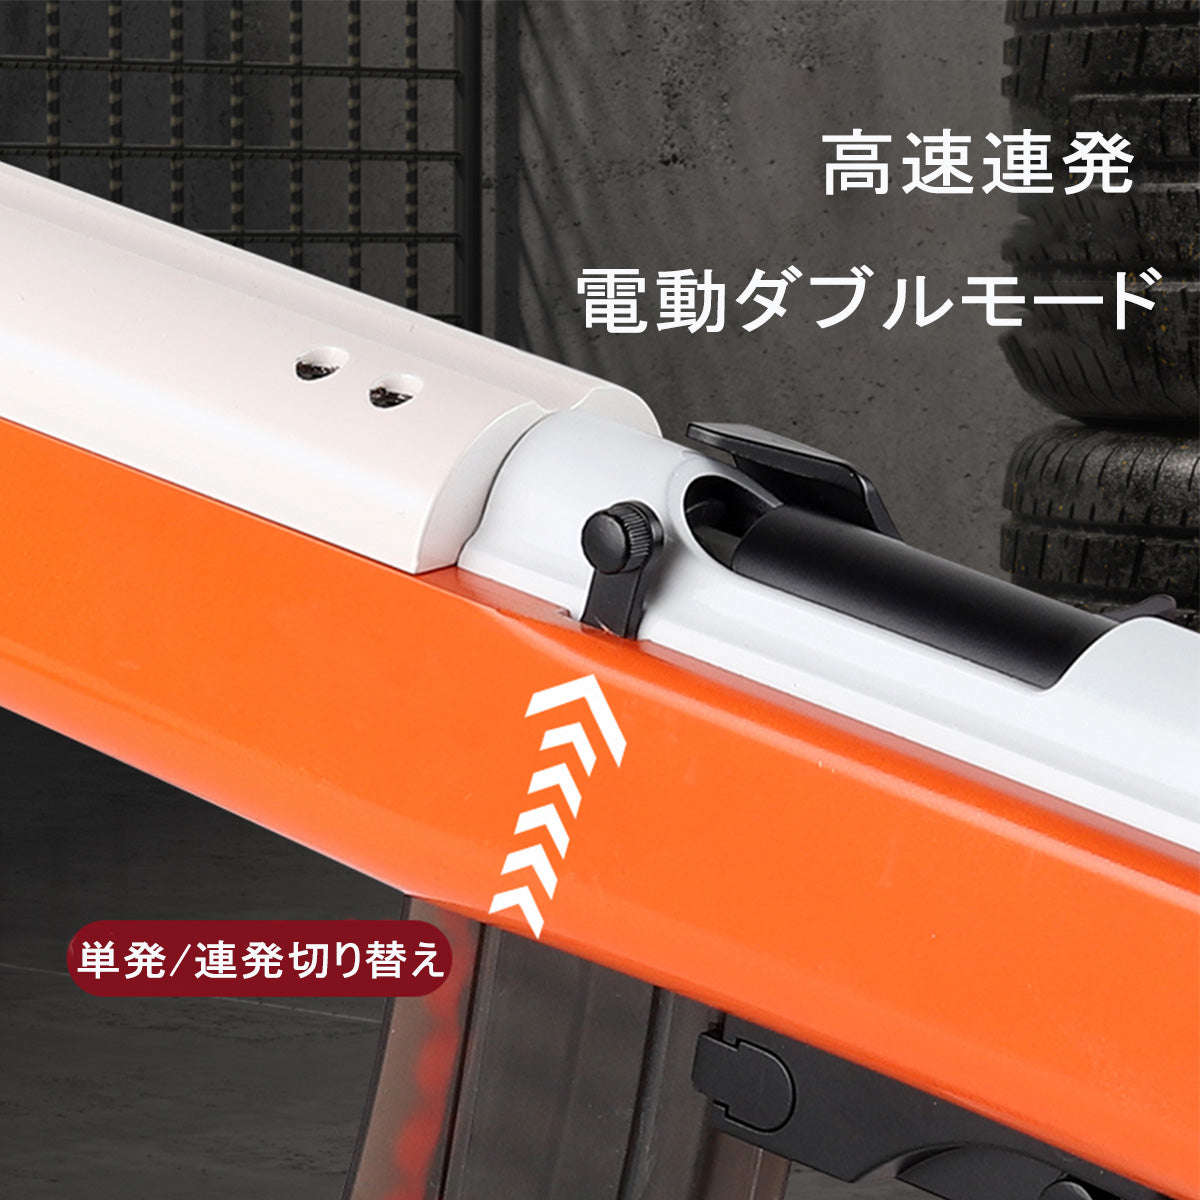 M2 Carbine ナーフ電動シリンダーダーダーツブラスター DARTS BLASTER 単発 全自動連発 ナイロン材質 水転写木目  3.3*1.3cmスポンジ弾